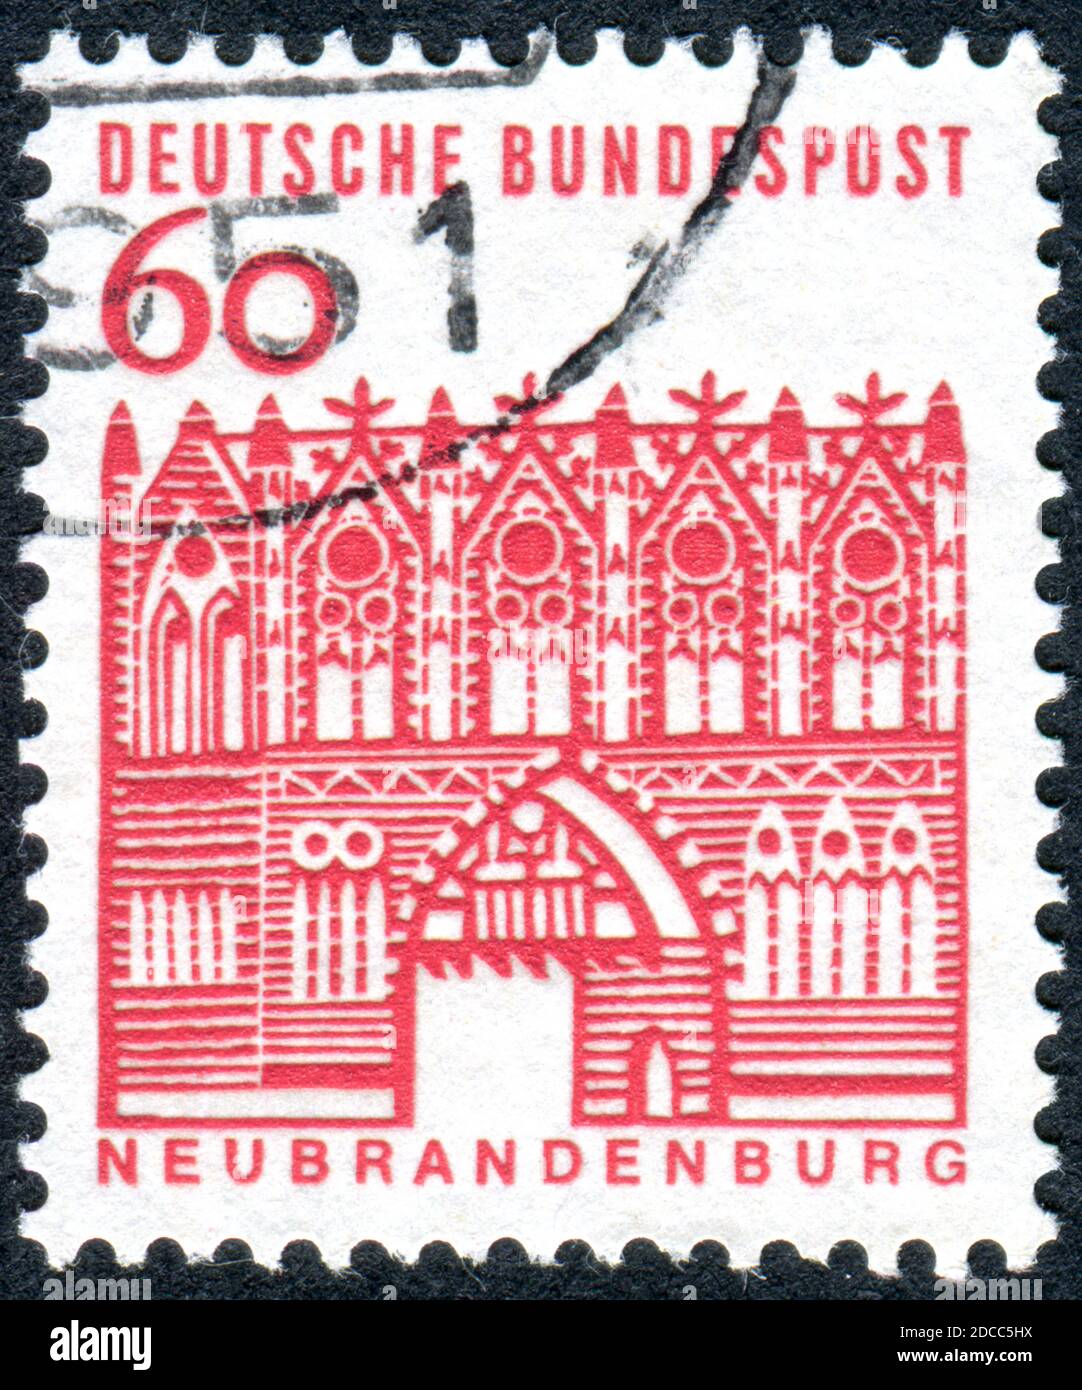 ALLEMAGNE - VERS 1964: Timbre imprimé en Allemagne, illustré de la porte de Treptow, Neubrandenburg, vers 1964 Banque D'Images